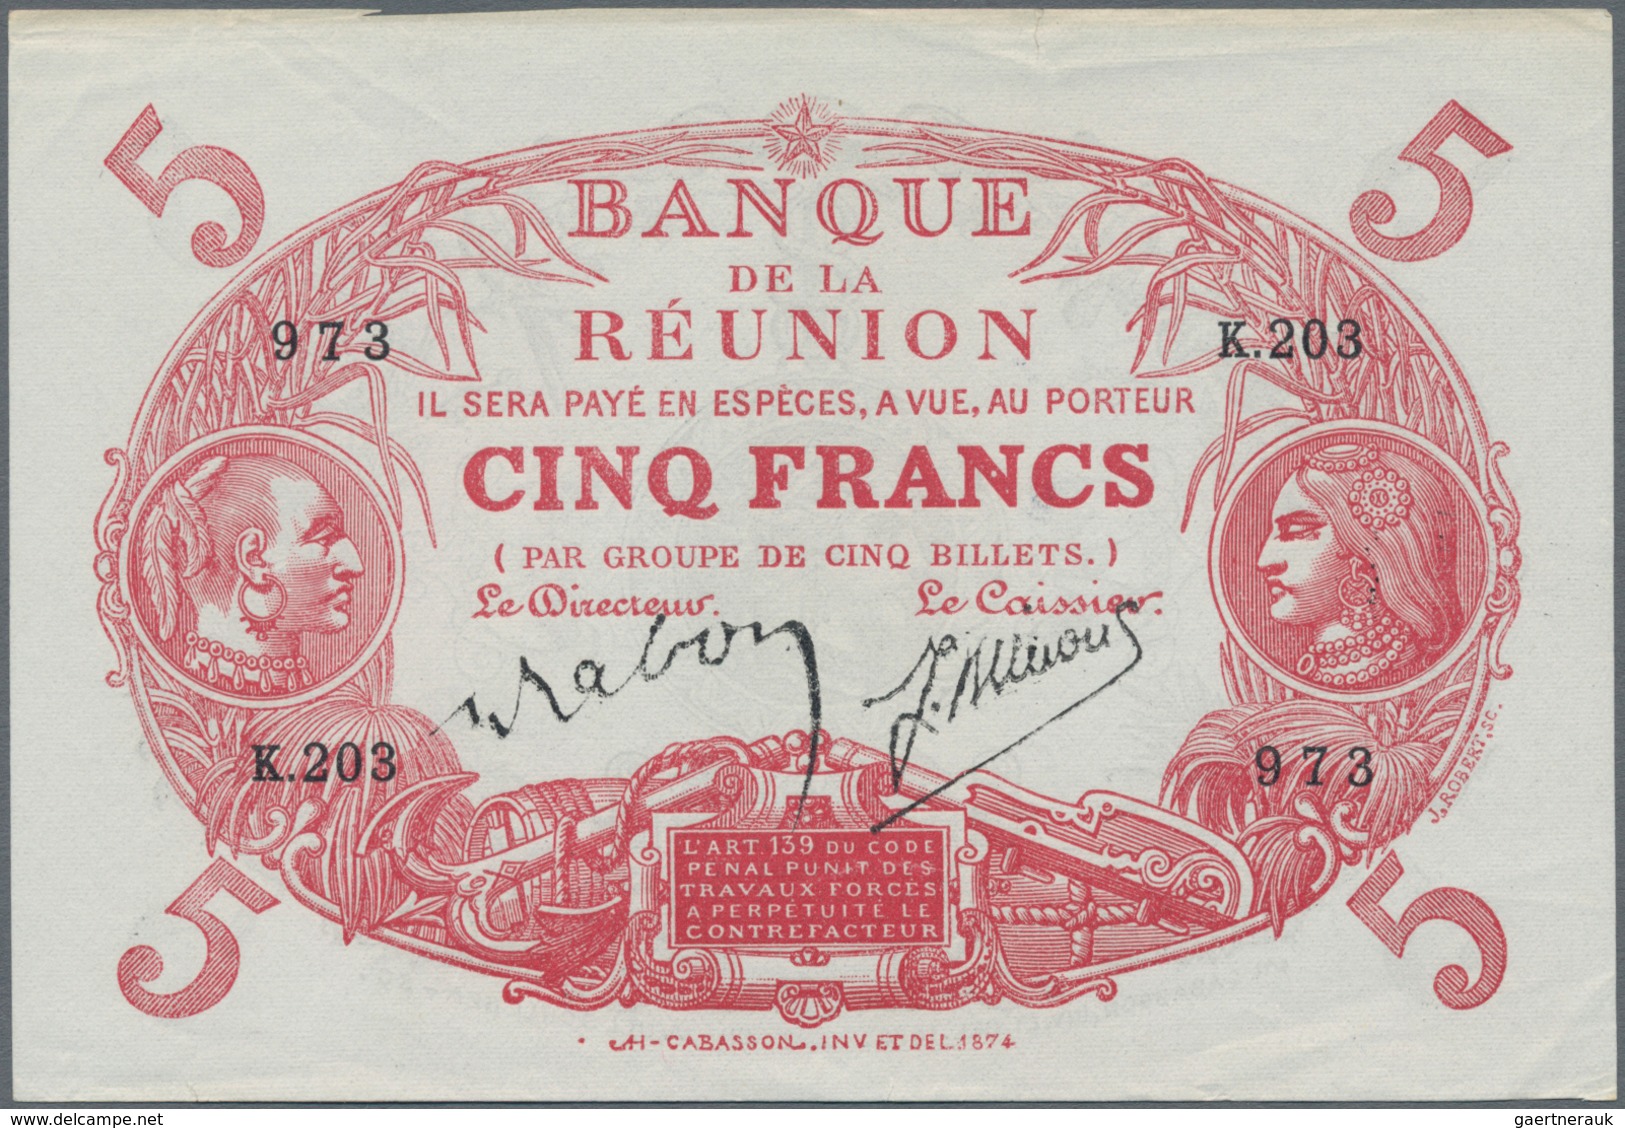 Réunion: Banque De La Réunion 5 Francs L. 1901 (1930-1944), P.14, Very Nice And Without Folds, Small - Réunion